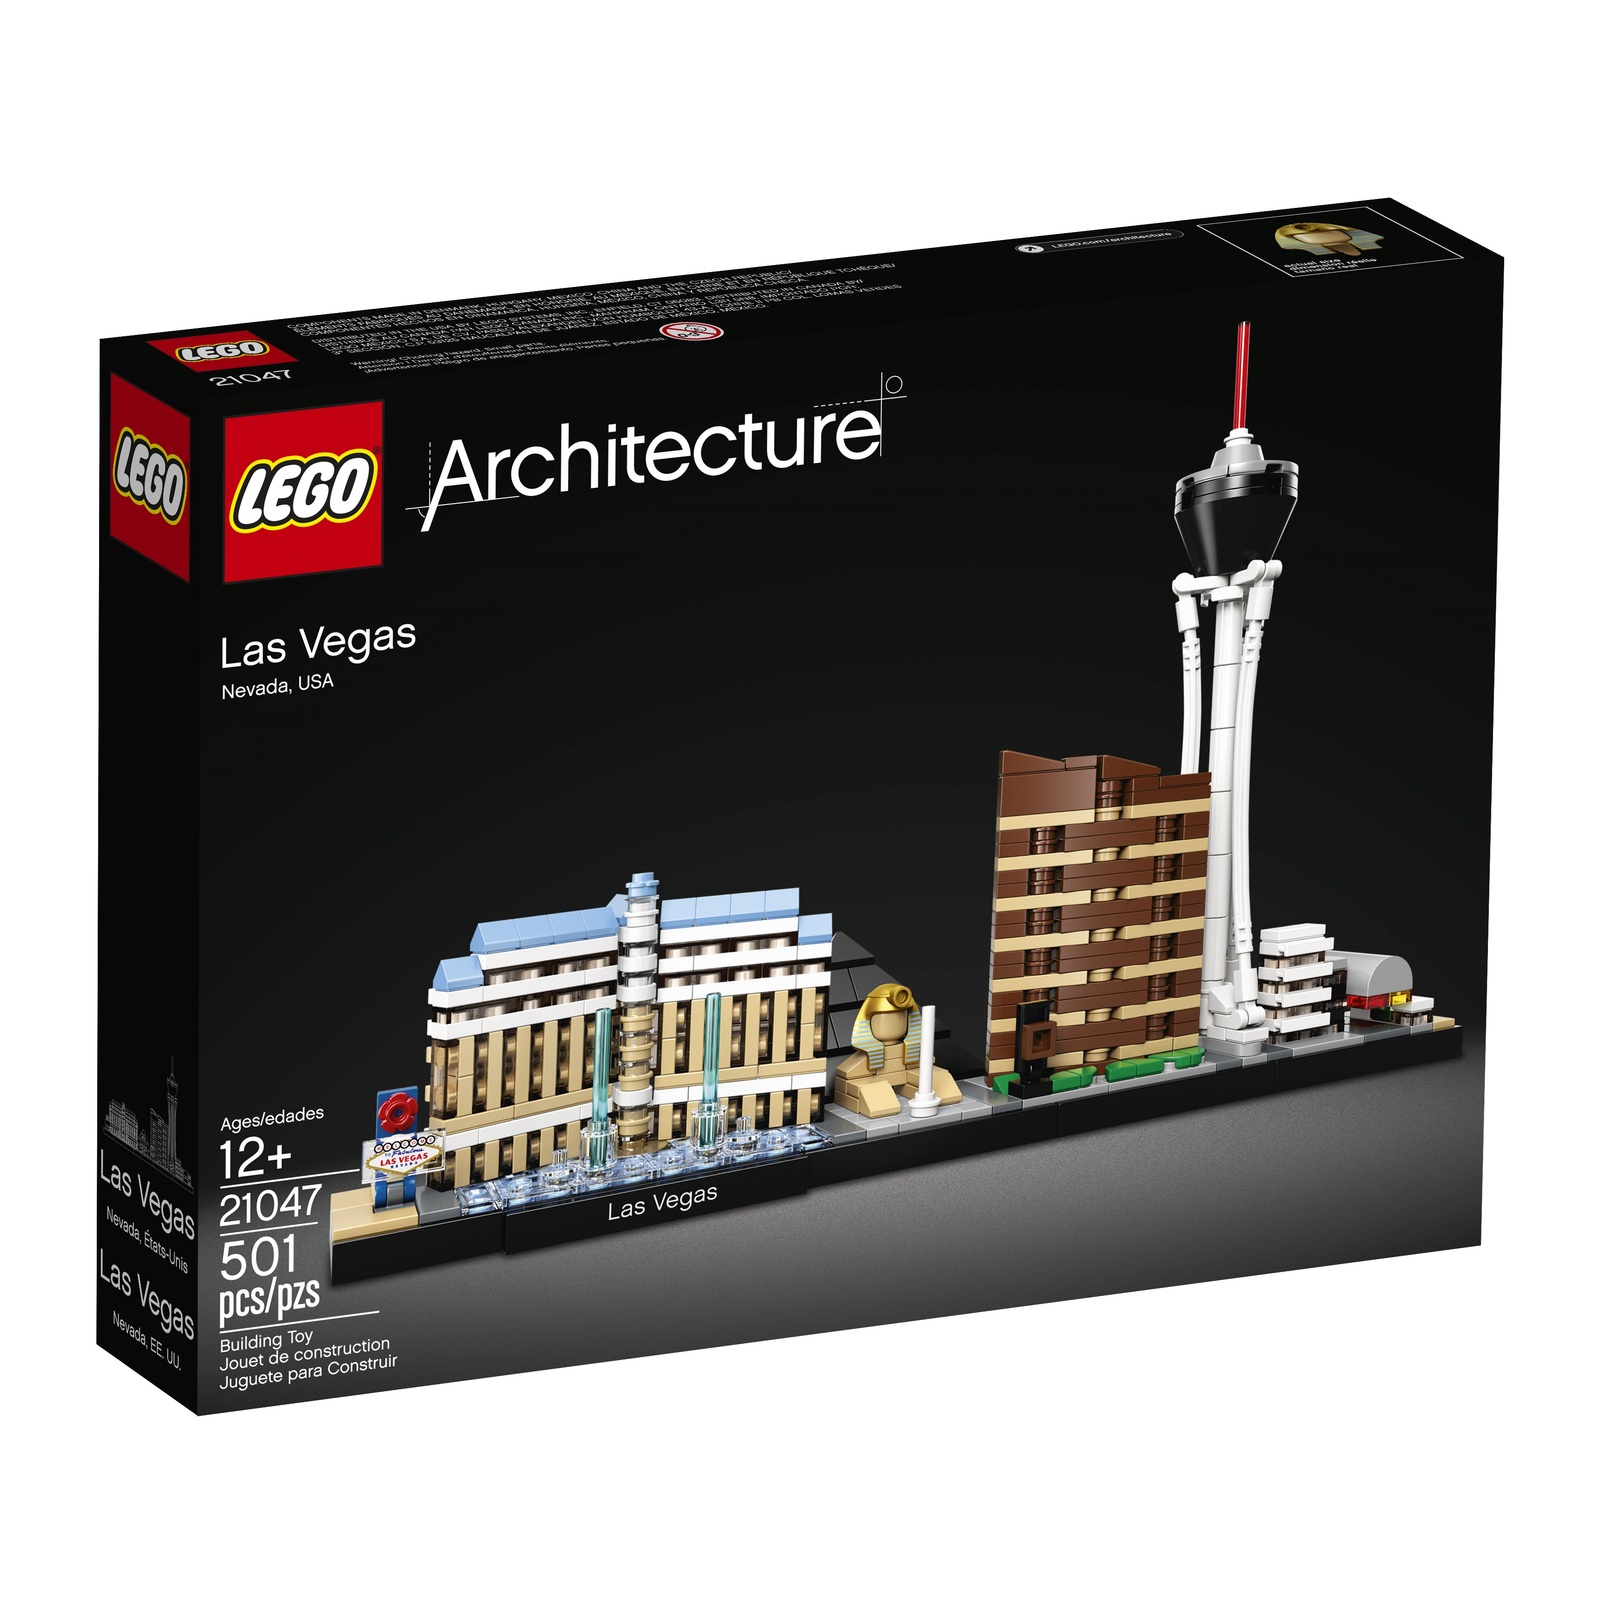 LEGO Architecture Las Vegas Skyline Collection 21047 Building Set (501 Pieces)